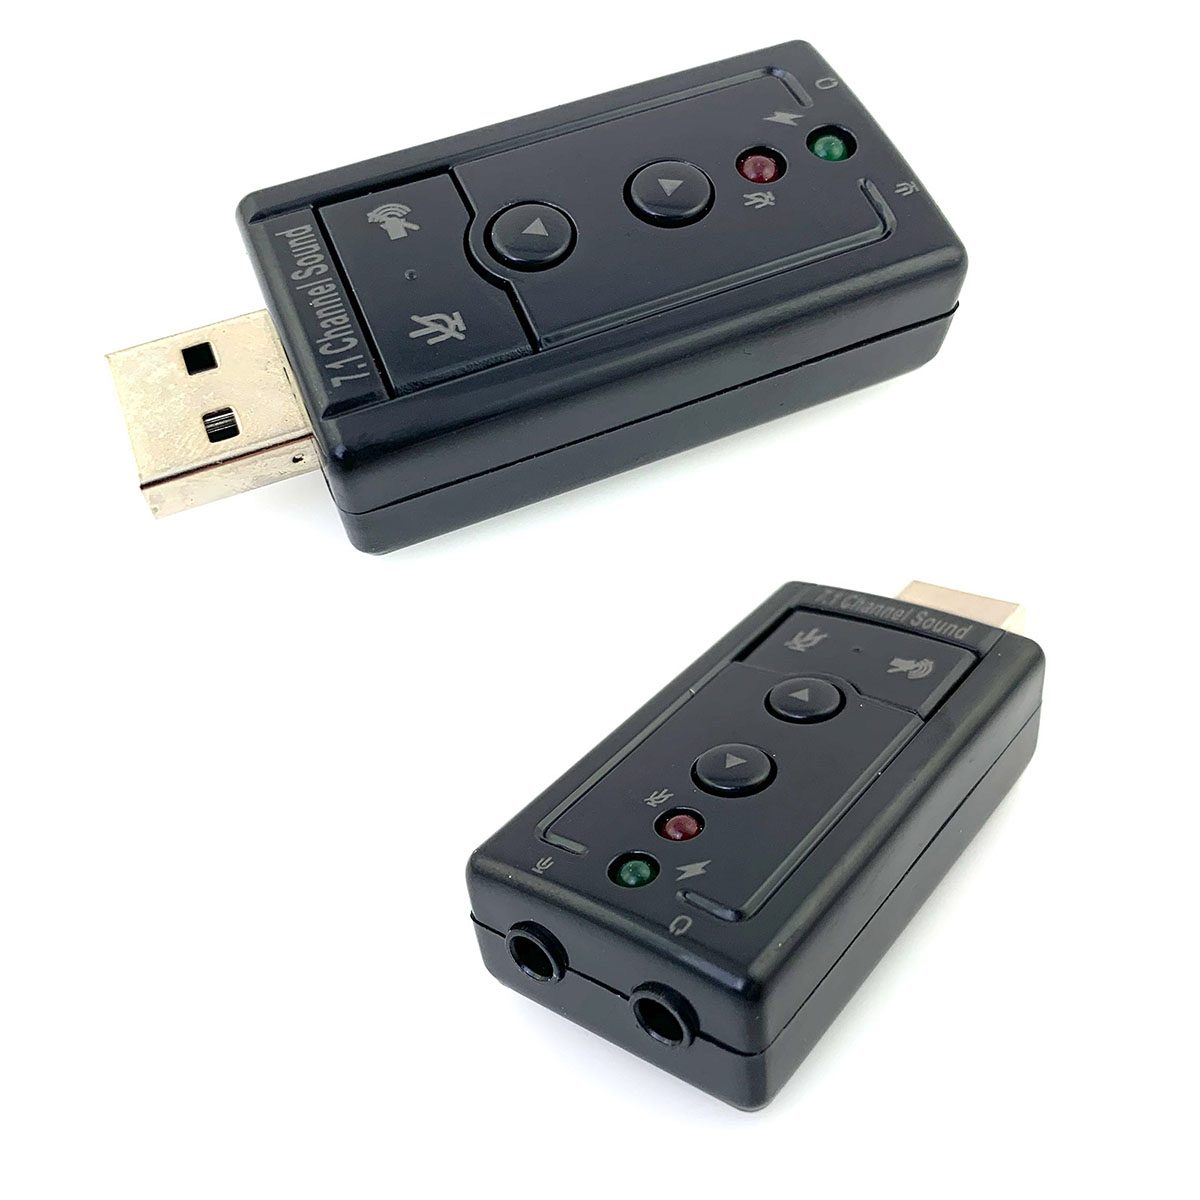 Внешняя USB "PLM" звуковая карта Audio USB 7.1 канальный, цвет черный.